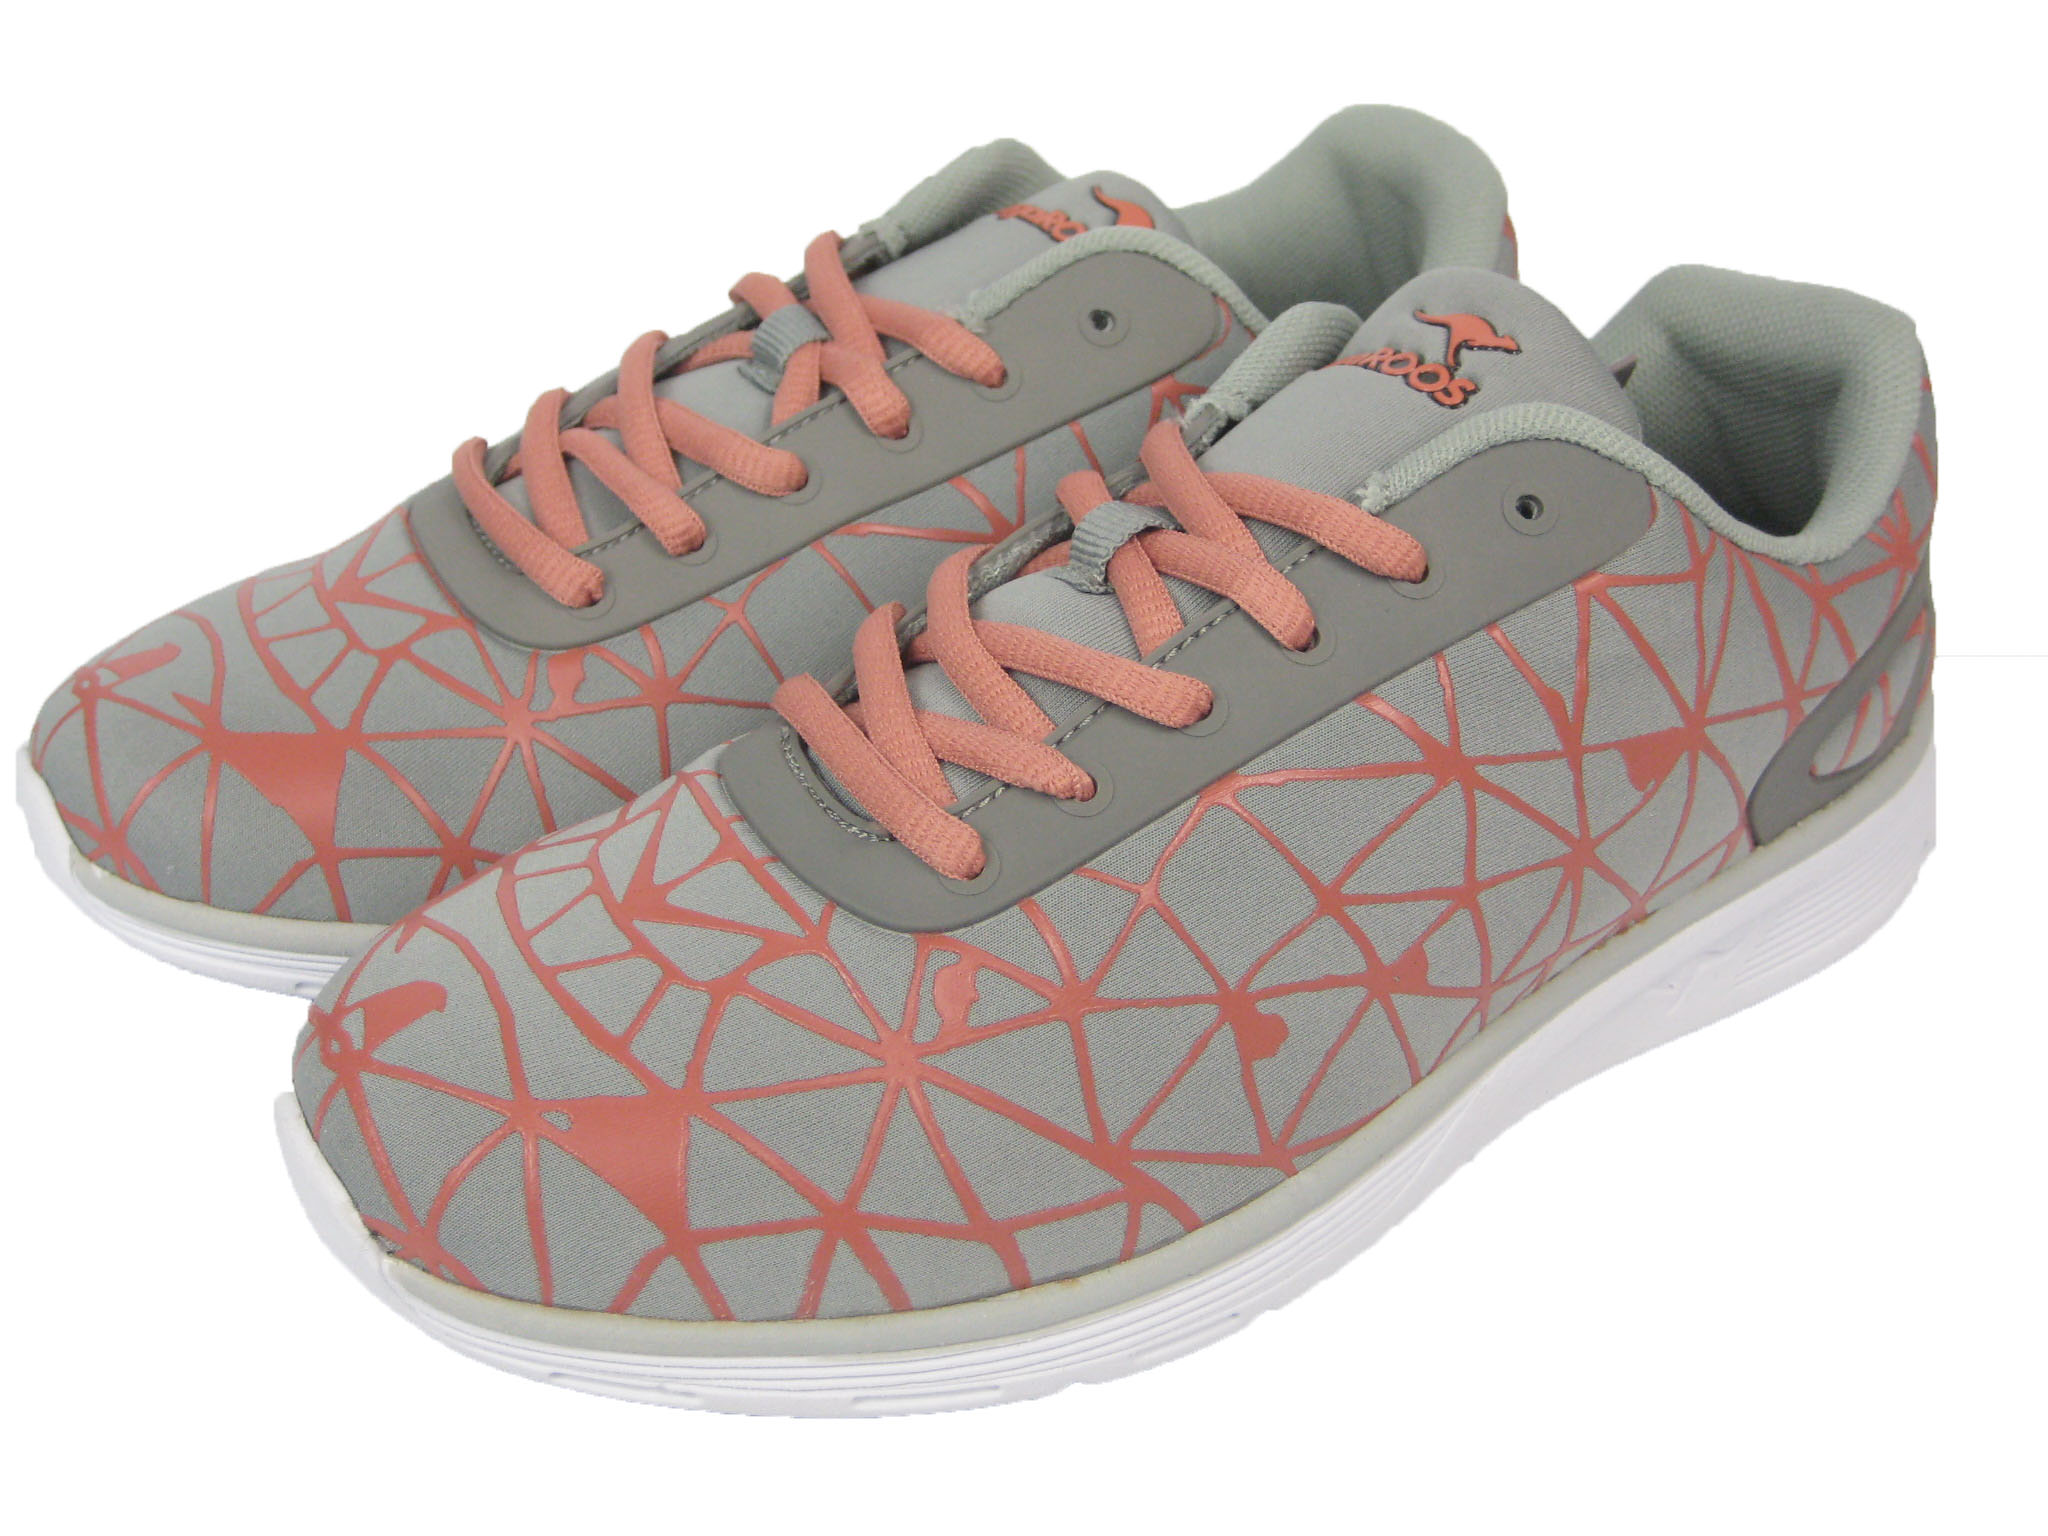 Kangaroos Ladies Shoes Sneaker Running Shoe K-Light Grey/Orange | eBay